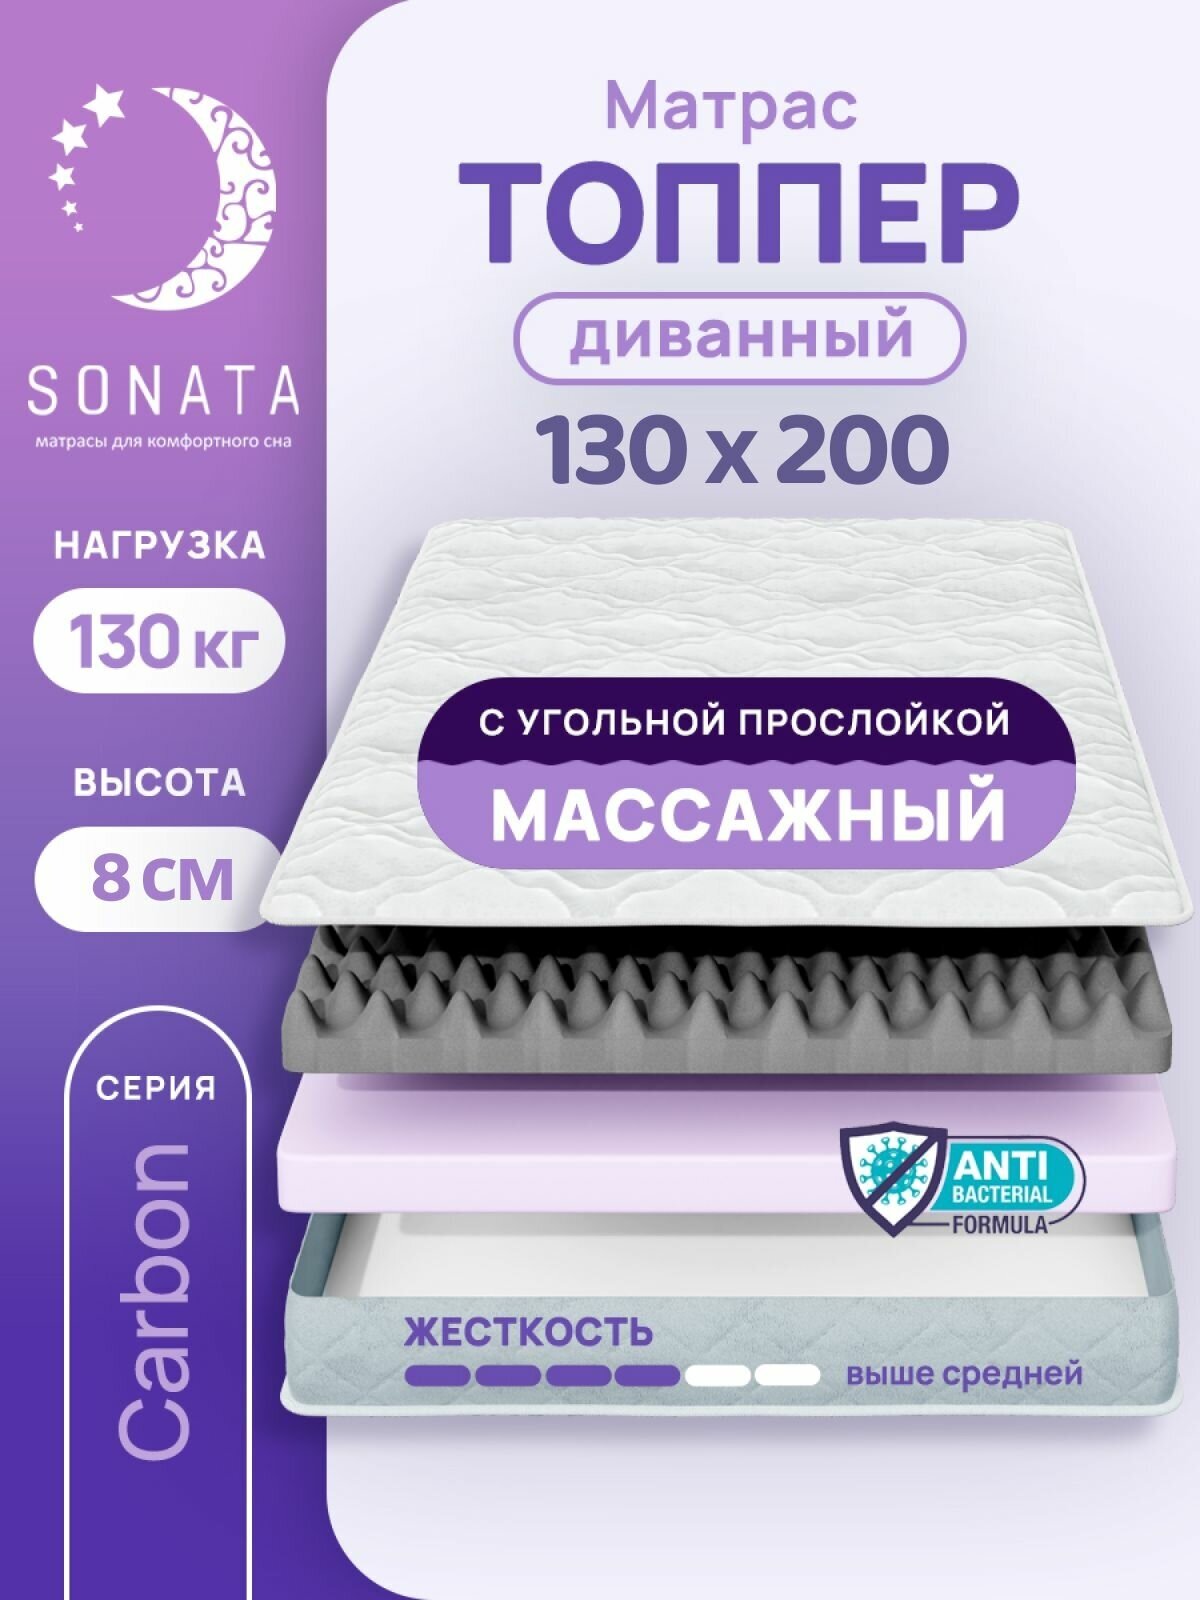 Топпер матрас 130х200 см SONATA, ортопедический, беспружинный, односпальный, тонкий матрац для дивана, кровати, высота 8 см с массажным эффектом